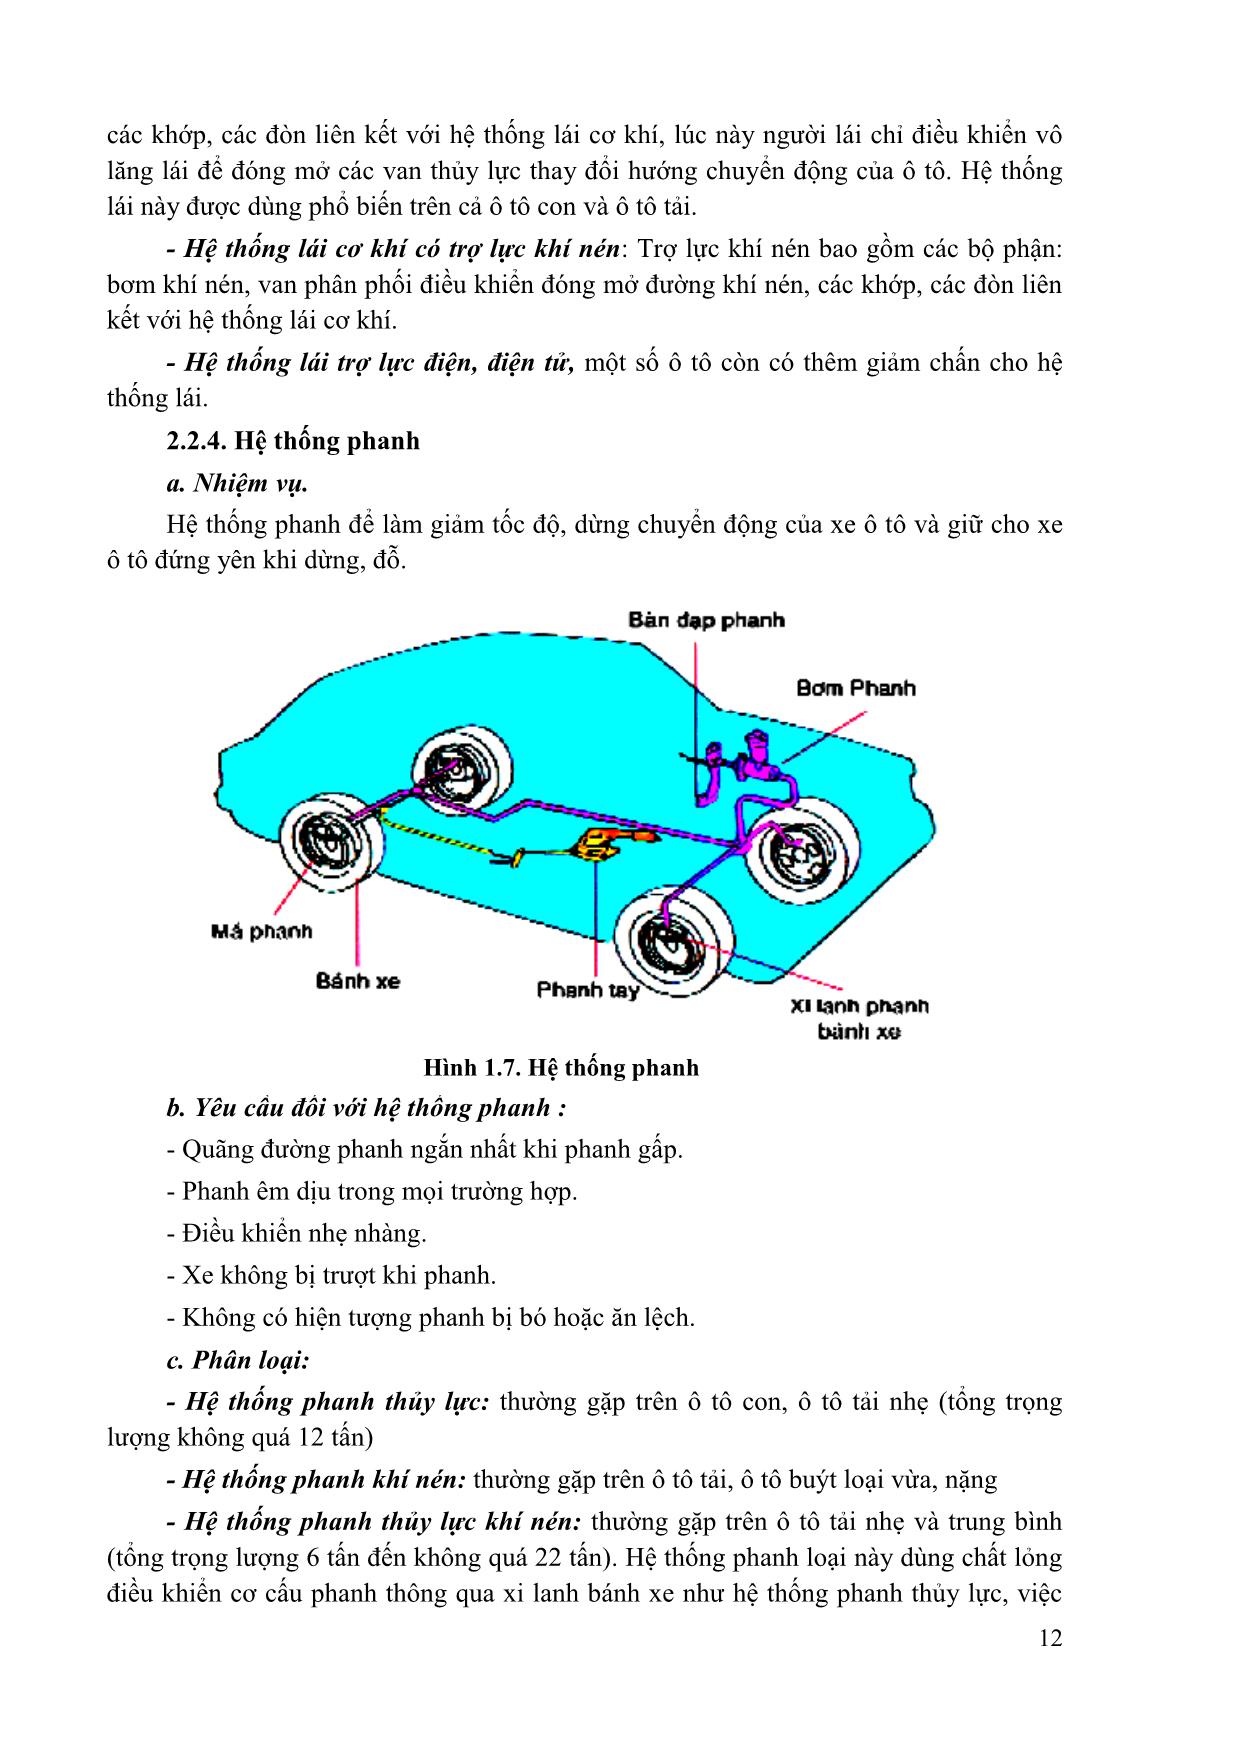 Giáo trình mô đun Kỹ thuật chung về ô tô và công nghệ sửa chữa trang 10